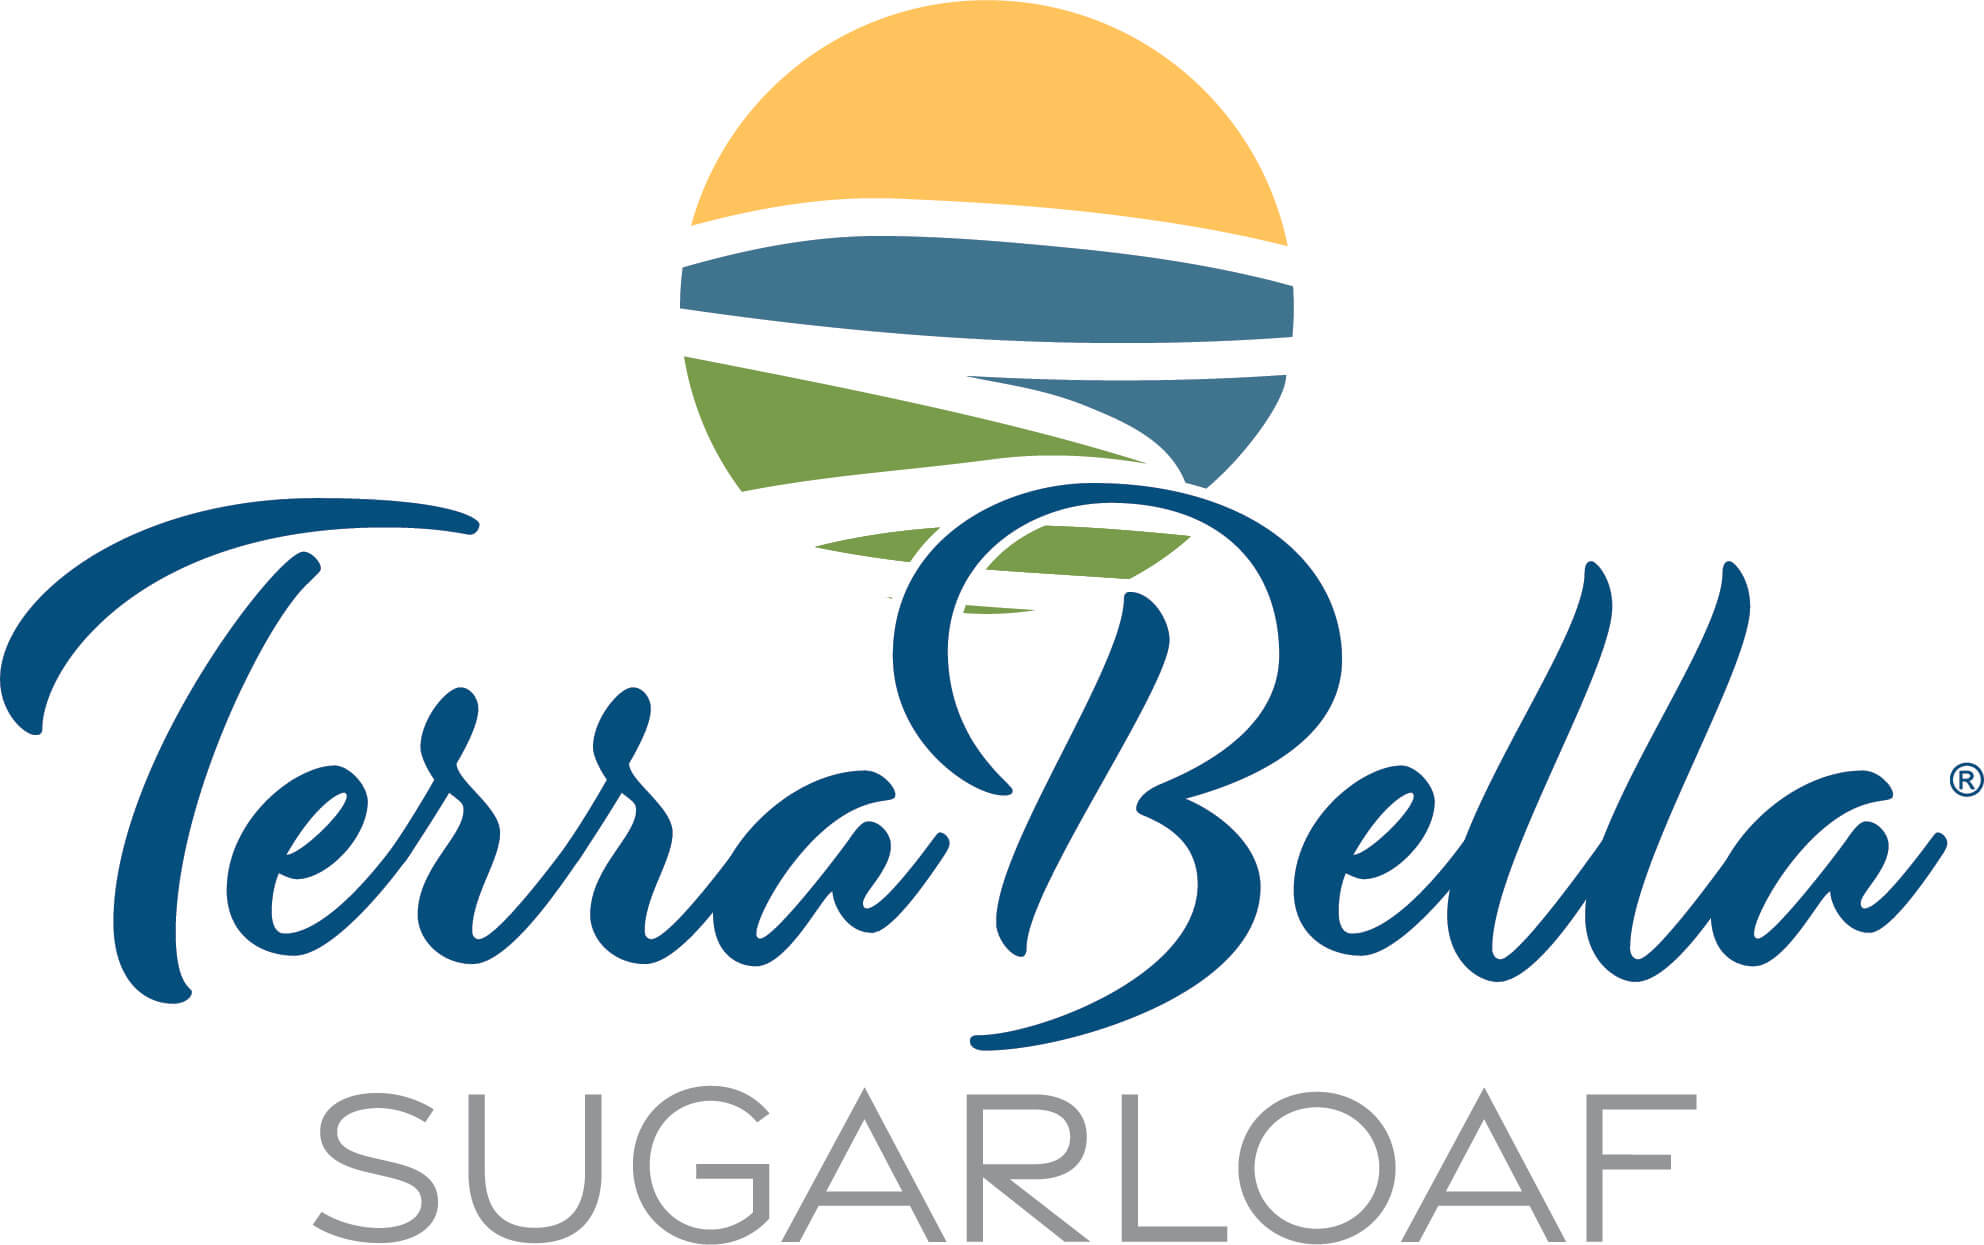 TerraBella-Sugarloaf-Stacked